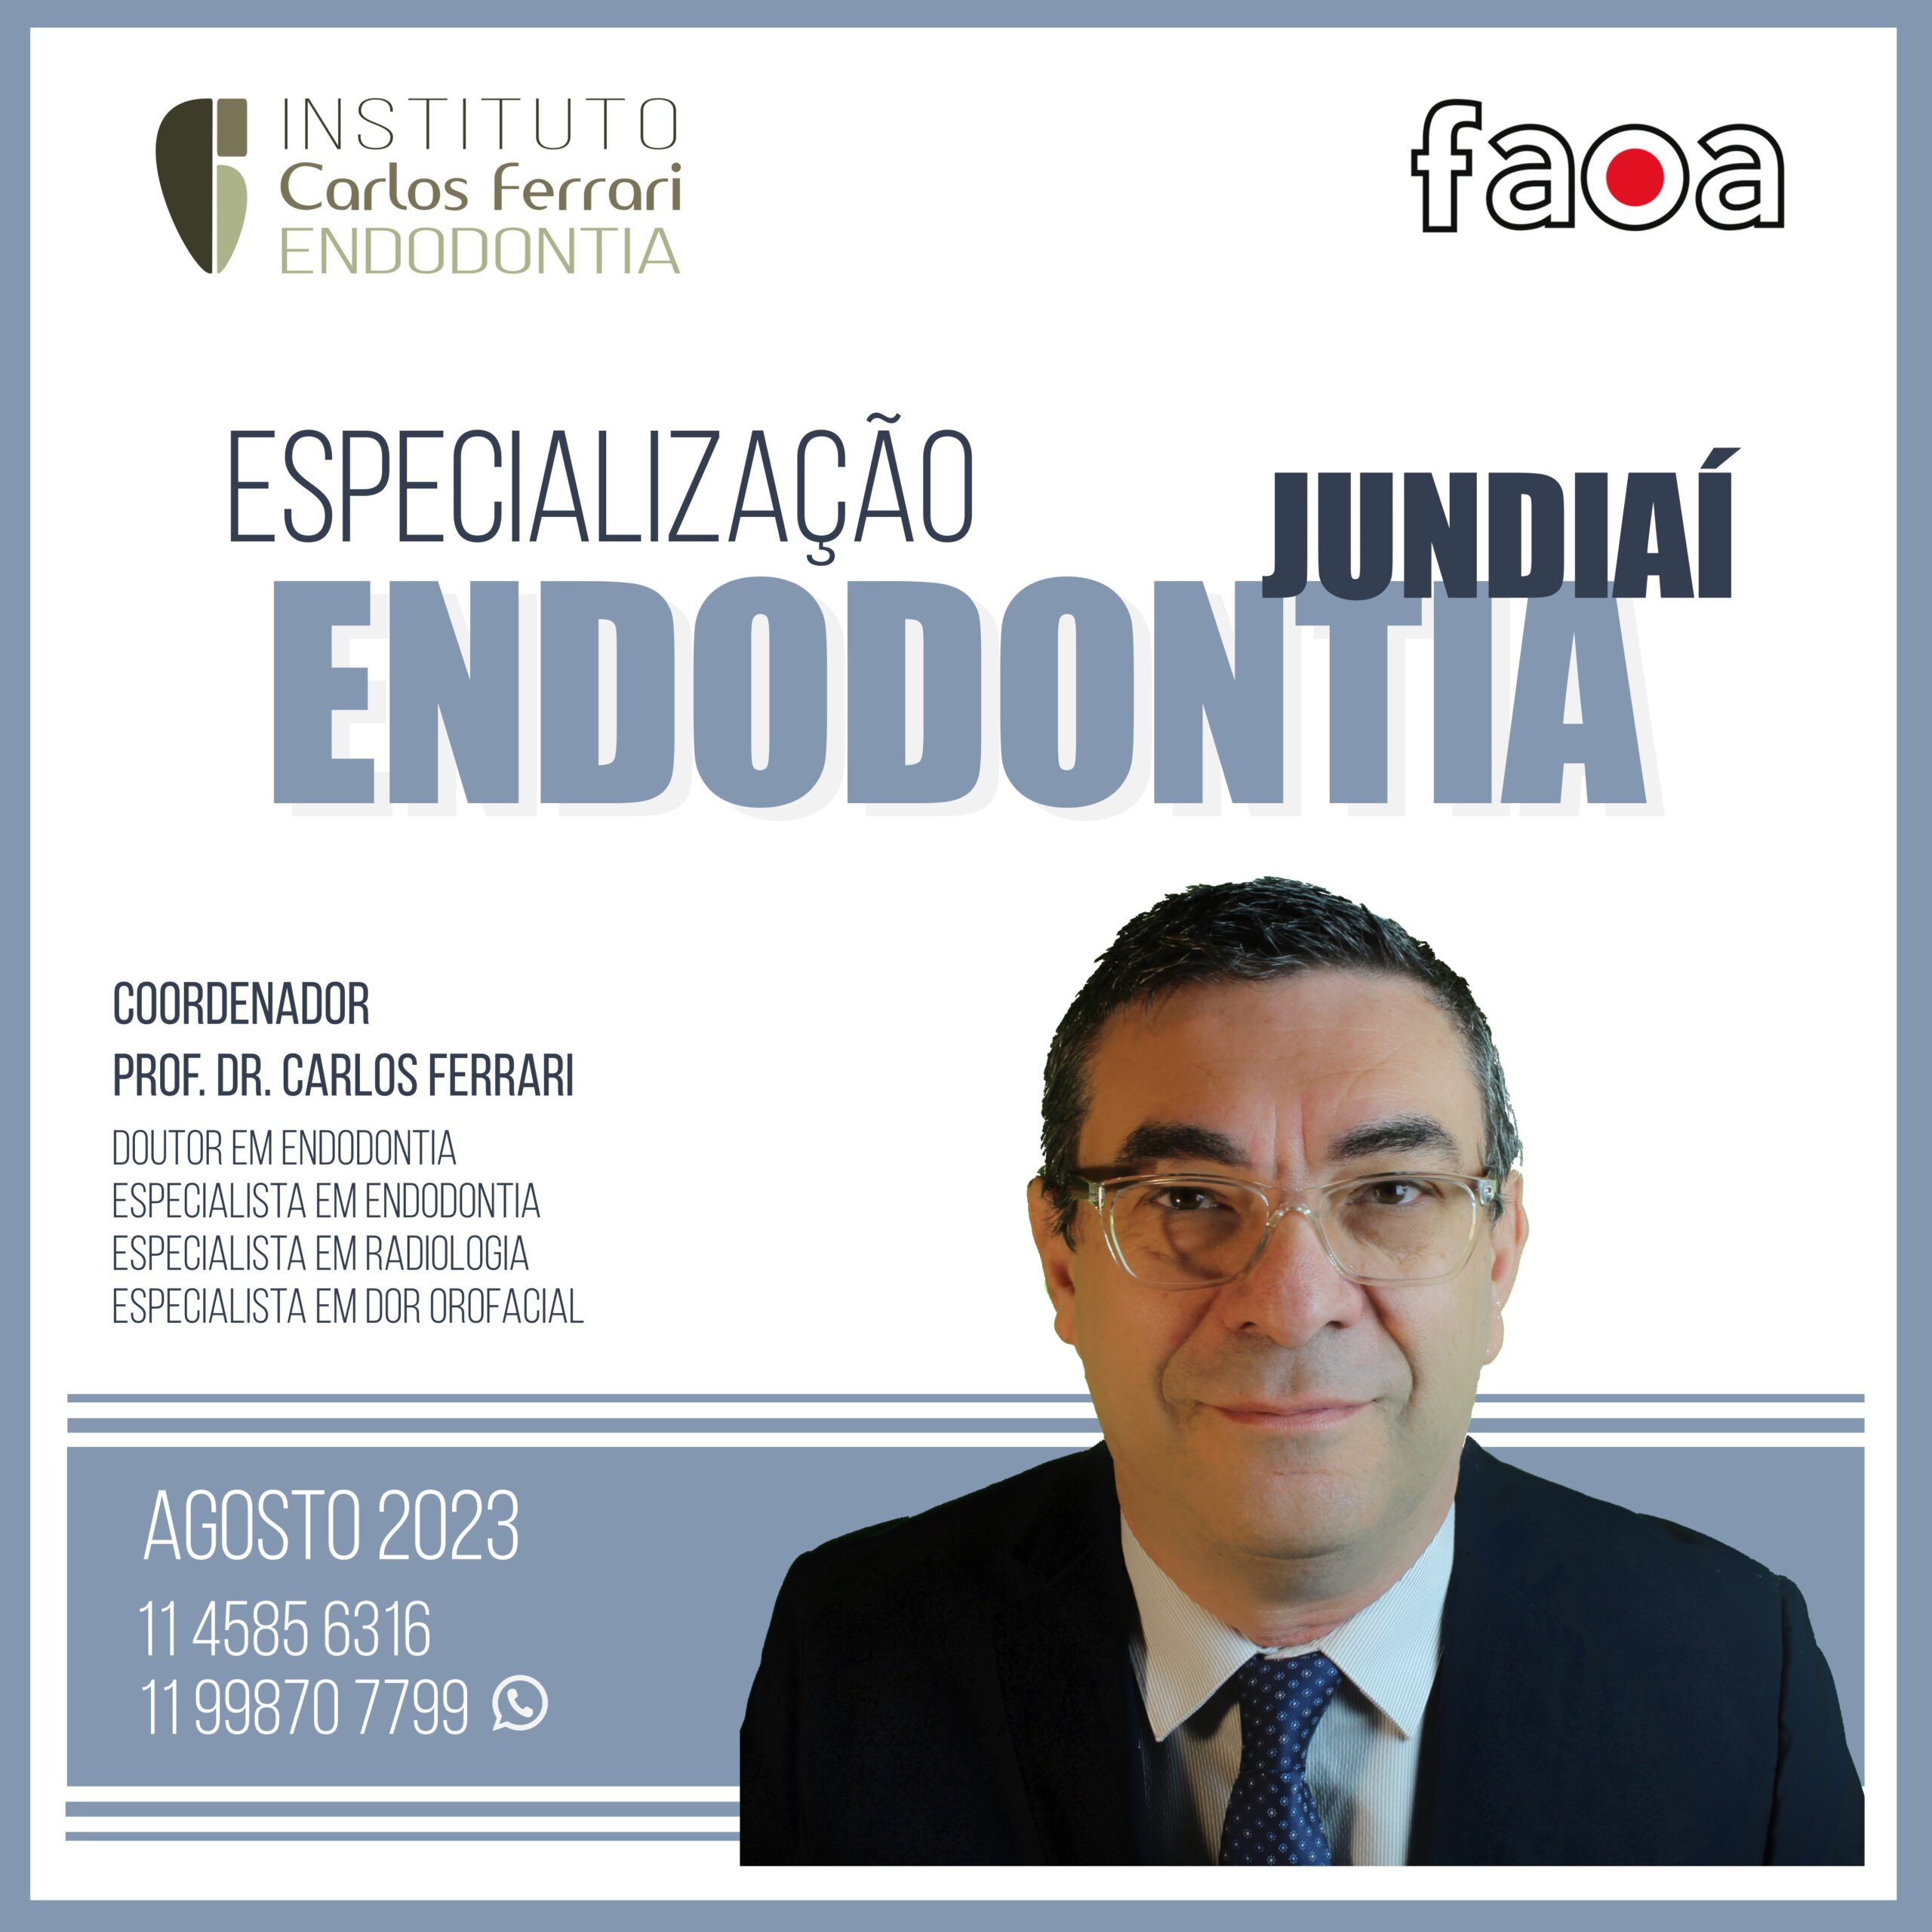 Actualmente estás viendo Especialización en endodoncia en Jundiaí.